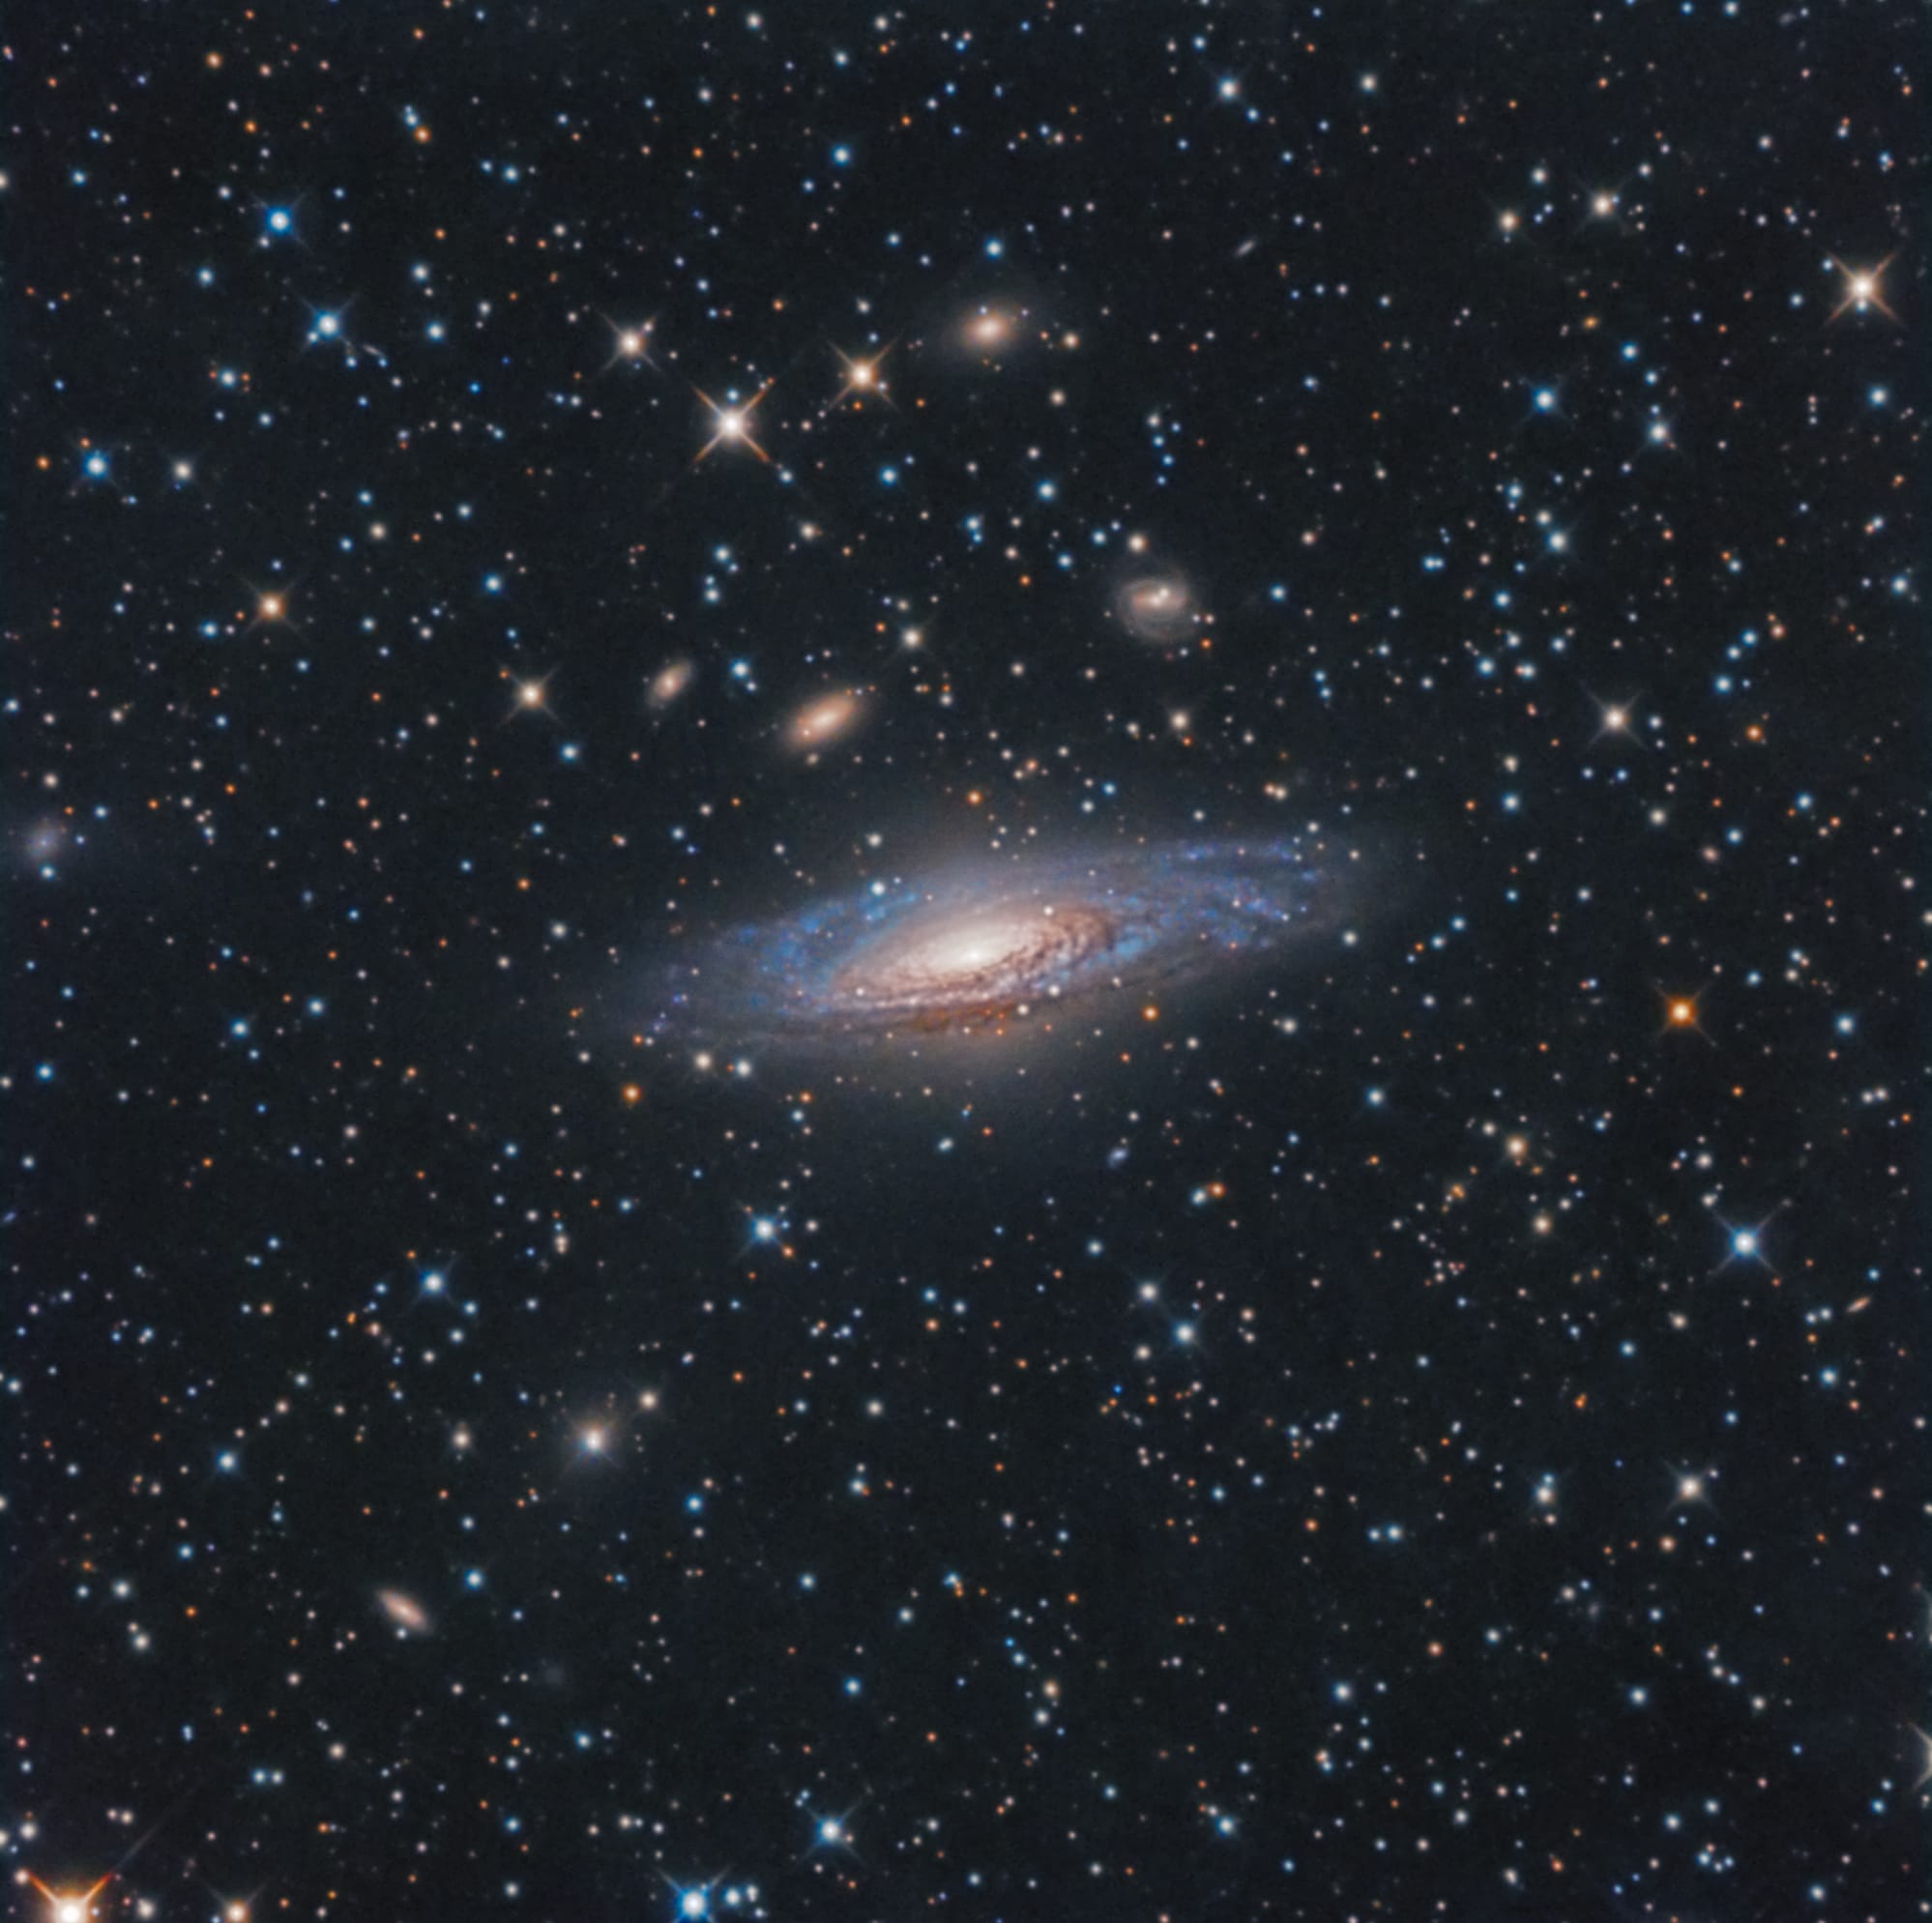 NGC 7331 GALASSIA NELLA COSTELLAZIONE DI PEGASO / NGC 7331 GALAXY IN THE COSTELLATION OF PEGASUS